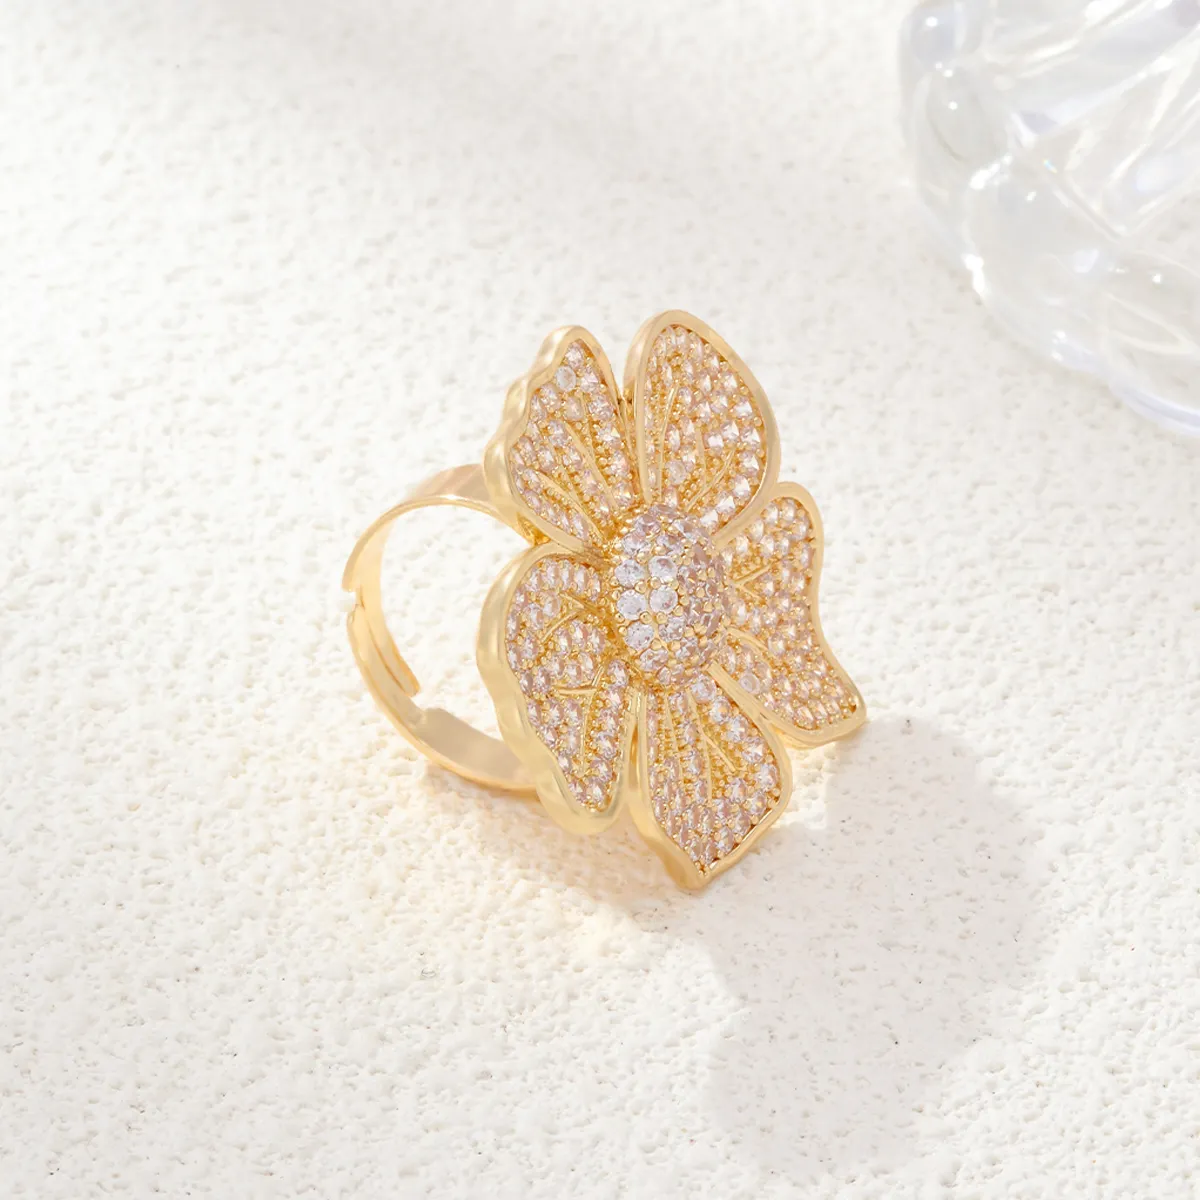 सीडीडी नई डिजाइनर आकार बदलने योग्य महिला सगाई की अंगूठियां उत्तम जिक्रोन फूल की अंगूठी शादी सौंदर्य आभूषण